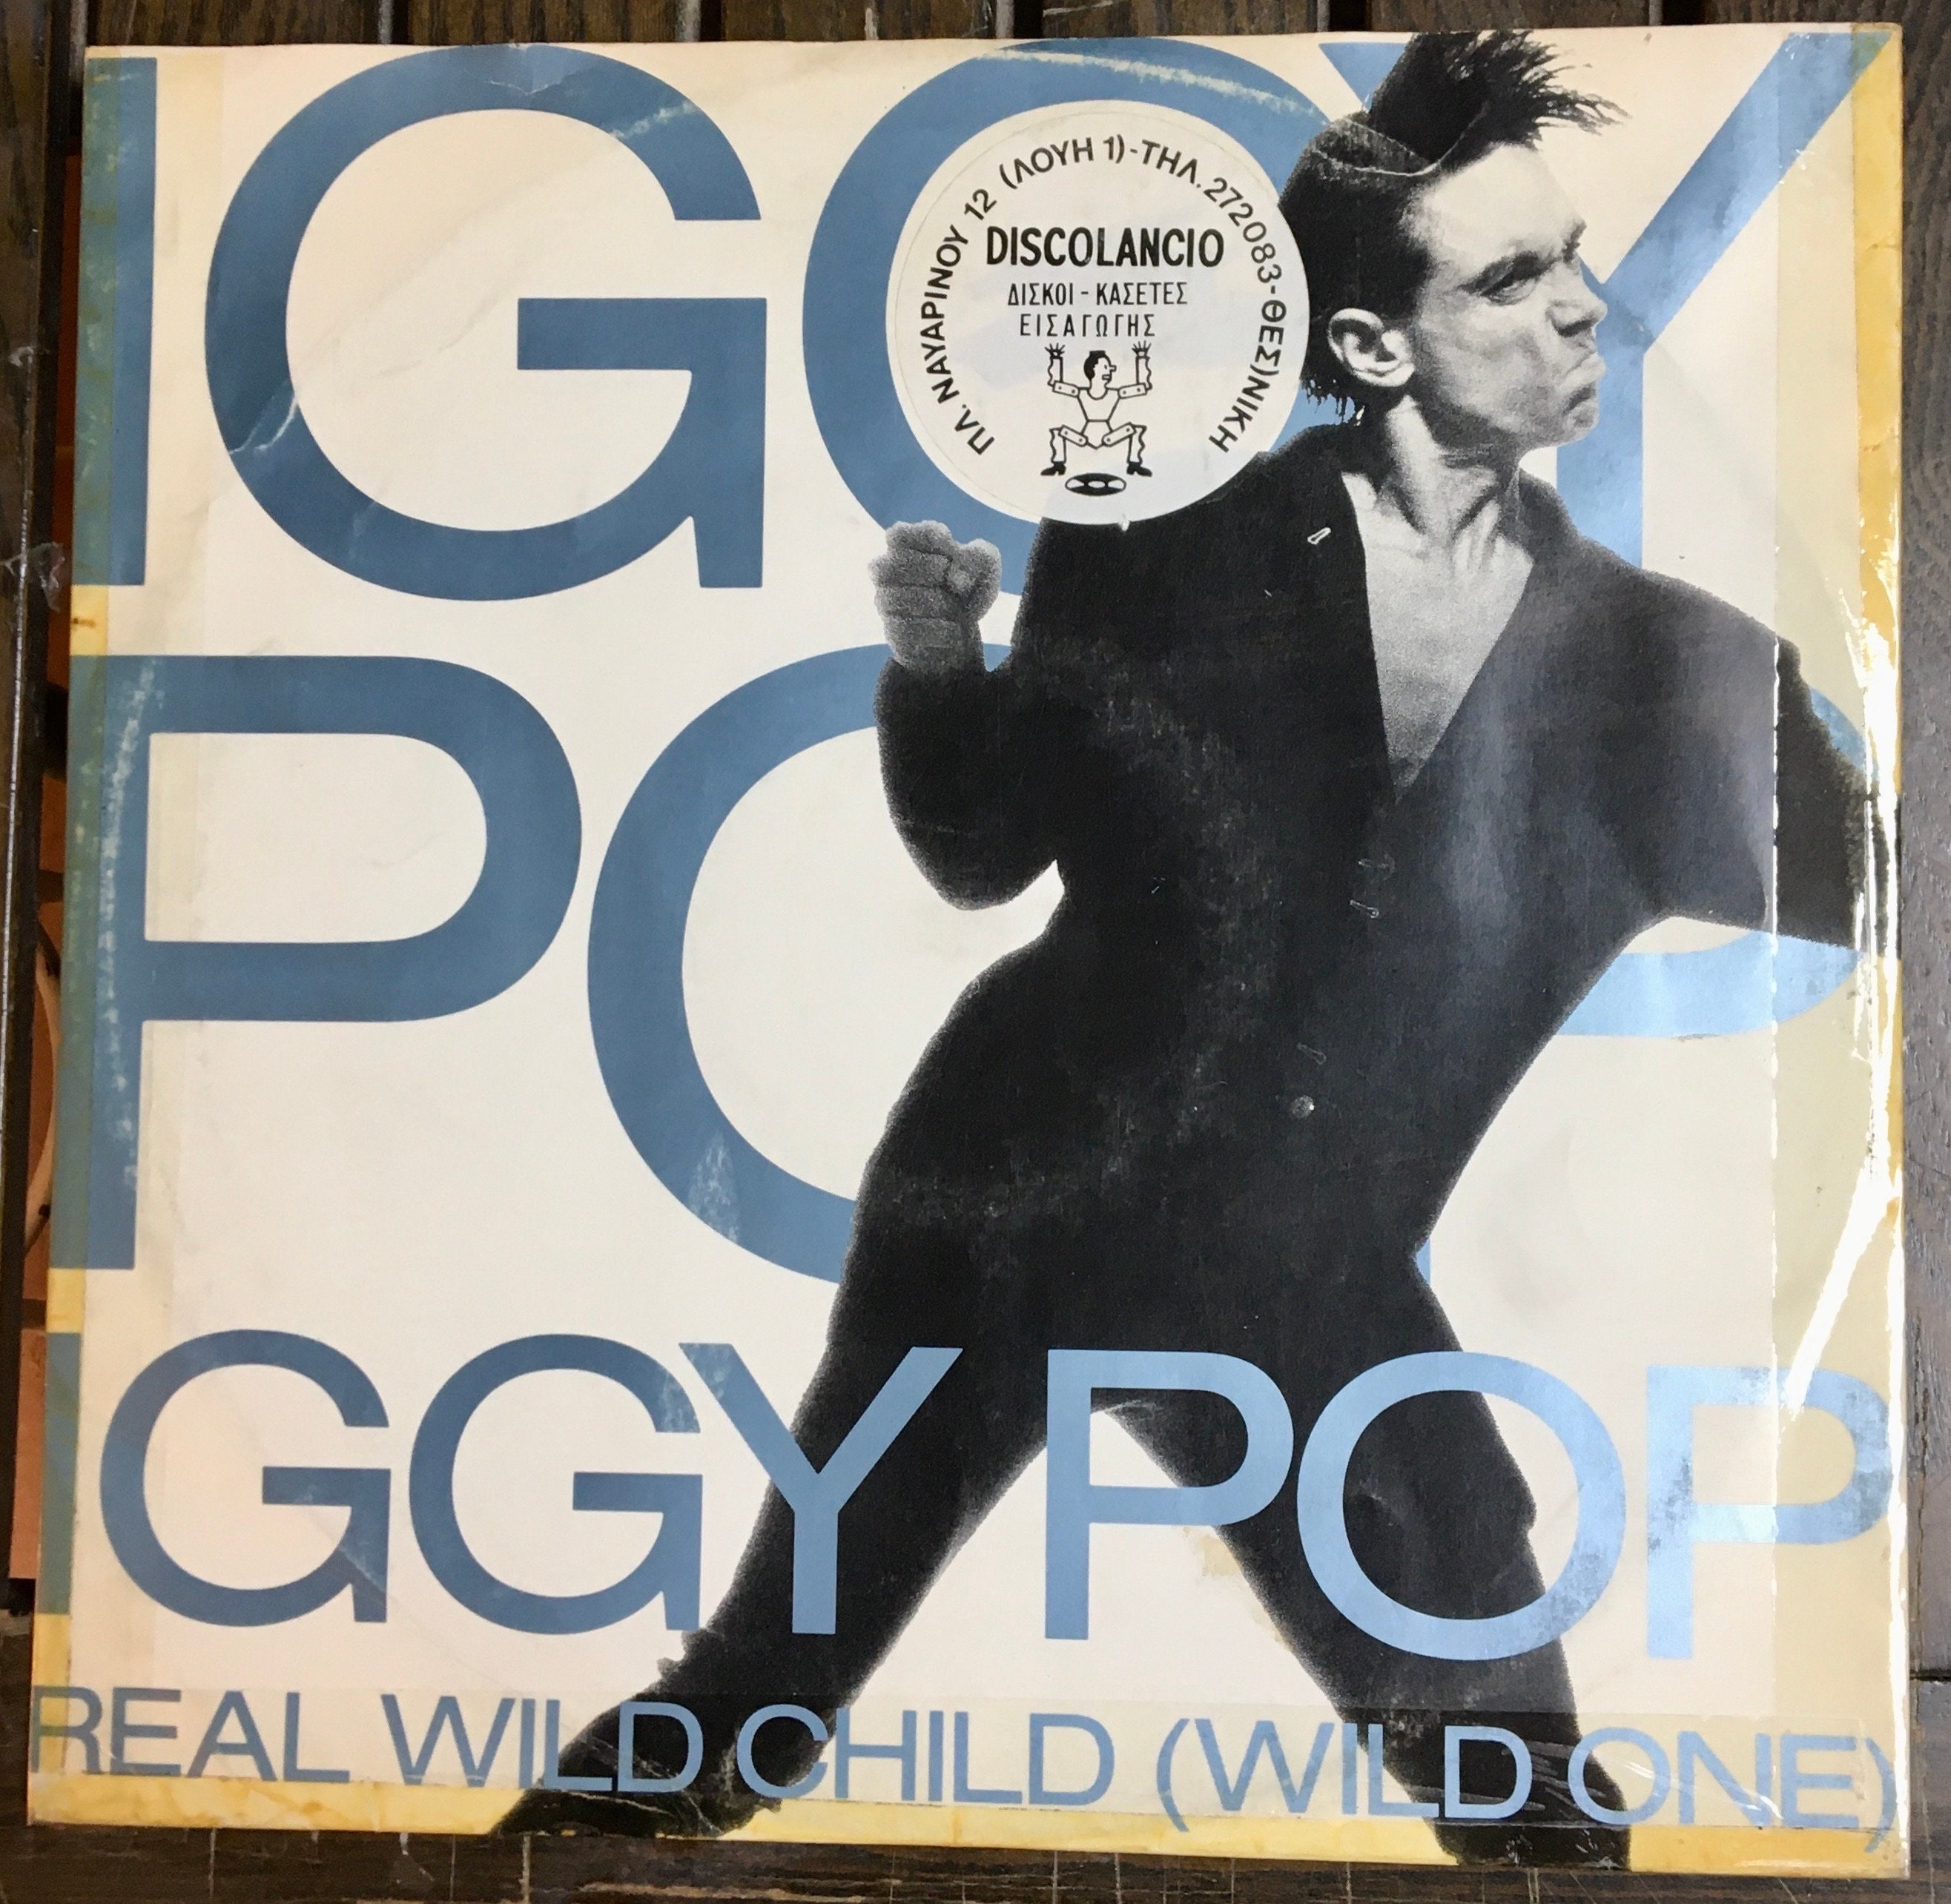 1986 Iggy Pop Real Wild Child wild One Vinyl 12 - Finland